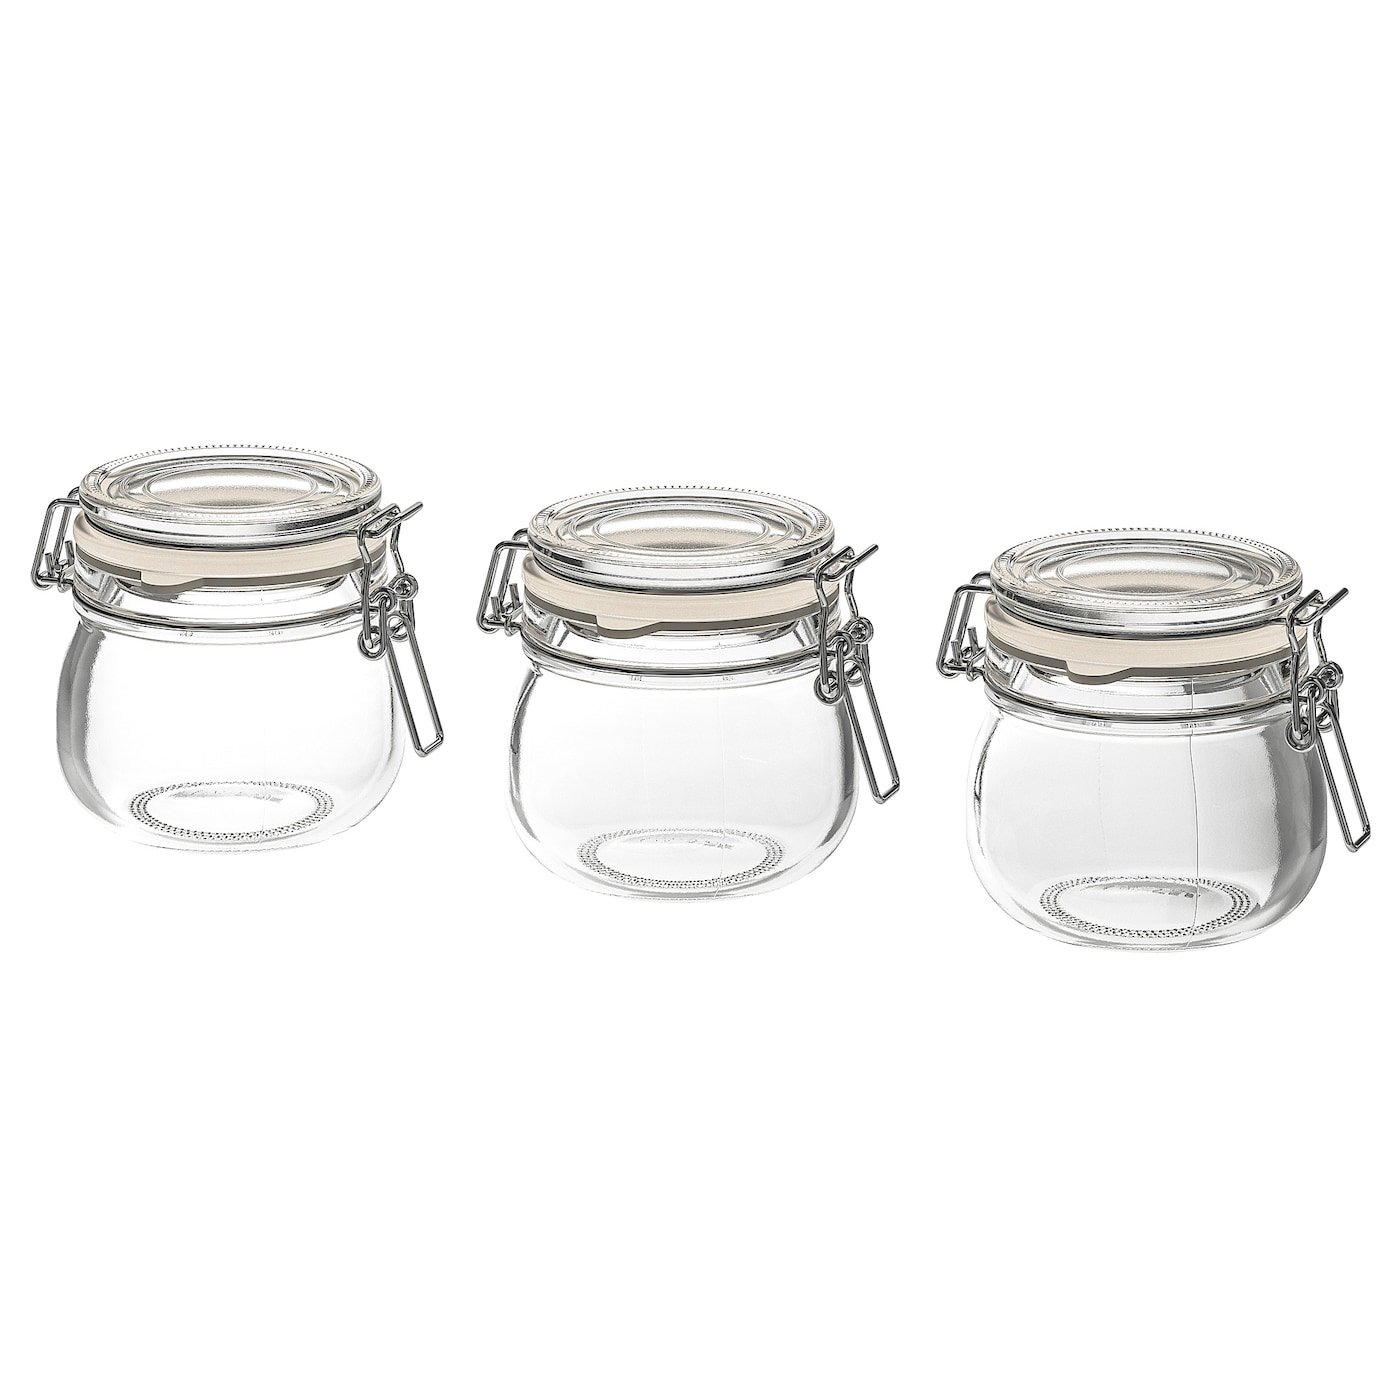 Ikea Korken Jar With Lid Clear Glass 18 L Amazon De